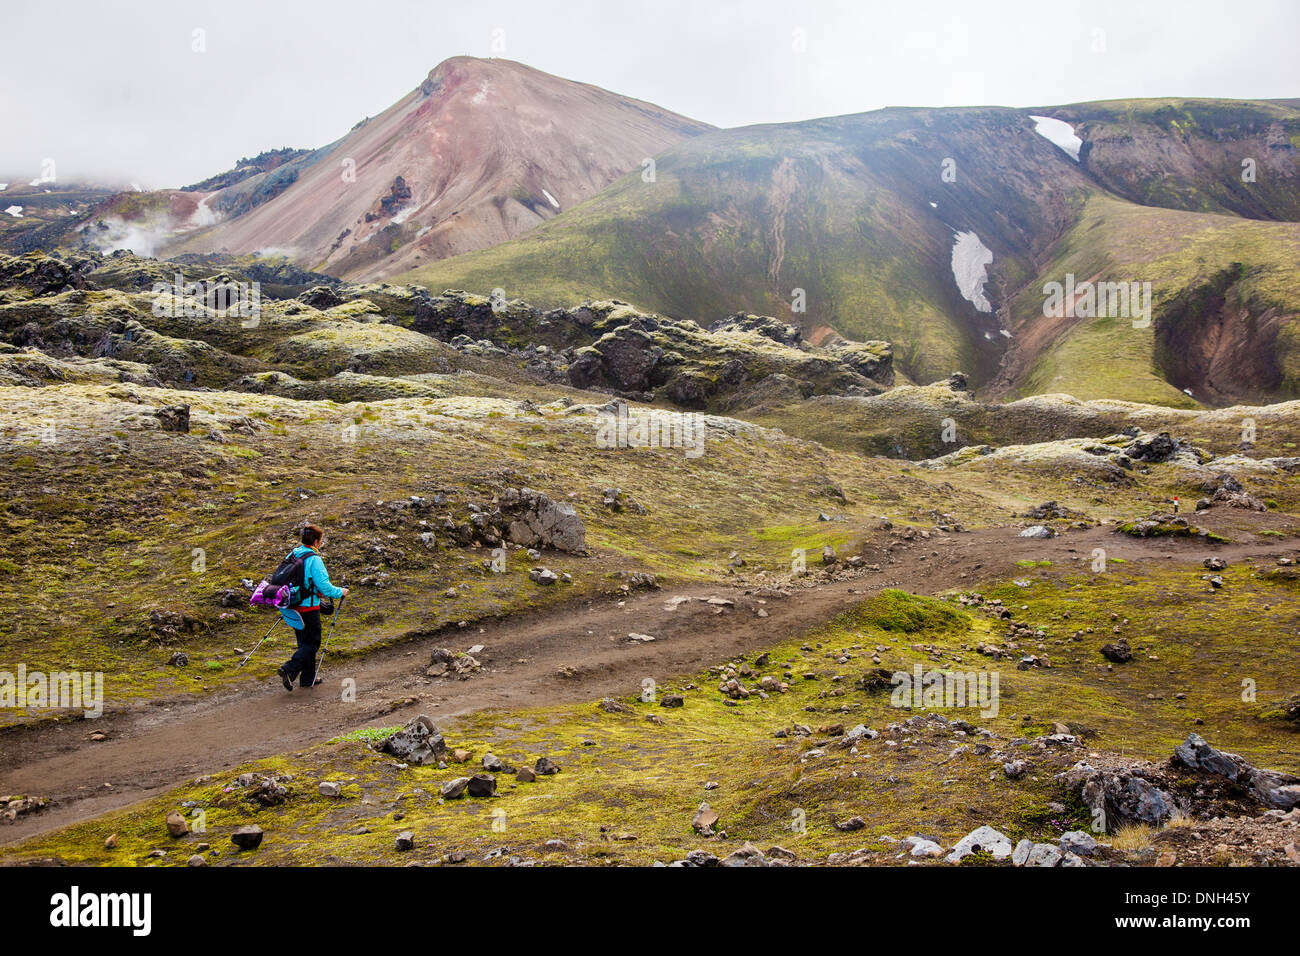 Escursioni a LANDMANNALAUGAR, vulcaniche e zona geotermica di cui il nome significa letteralmente "bagni caldi del popolo della terra', Regione degli Altipiani, sud dell'Islanda, EUROPA Foto Stock